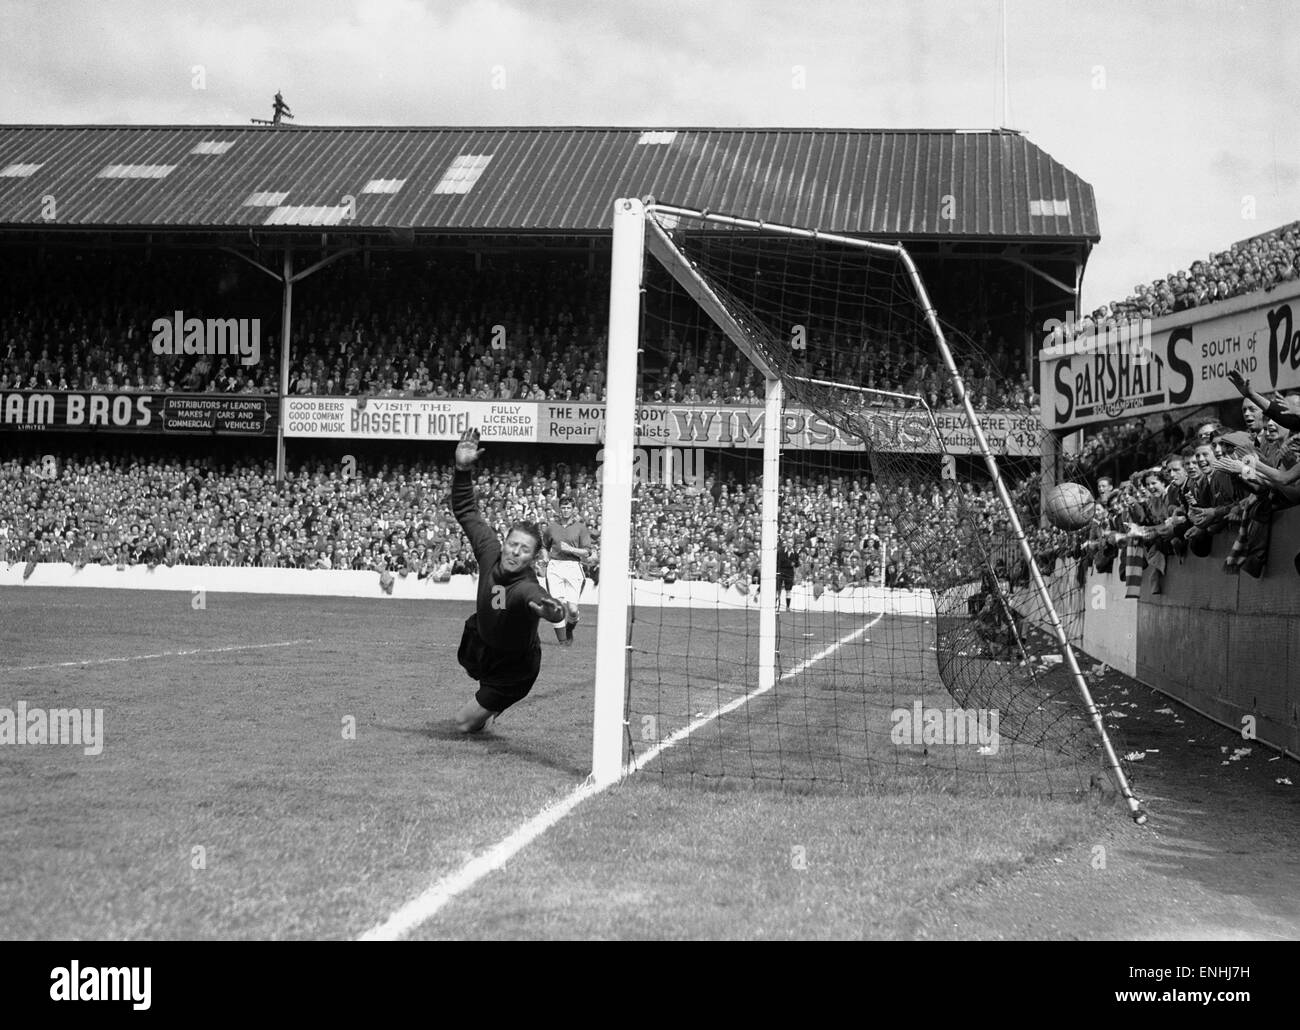 English League Division due corrispondono alla Dell. Southampton 1 v Everton 0. Everton portiere Ted Sagar in azione durante la partita durante un attacco di santi. Il 18 agosto 1951. Foto Stock